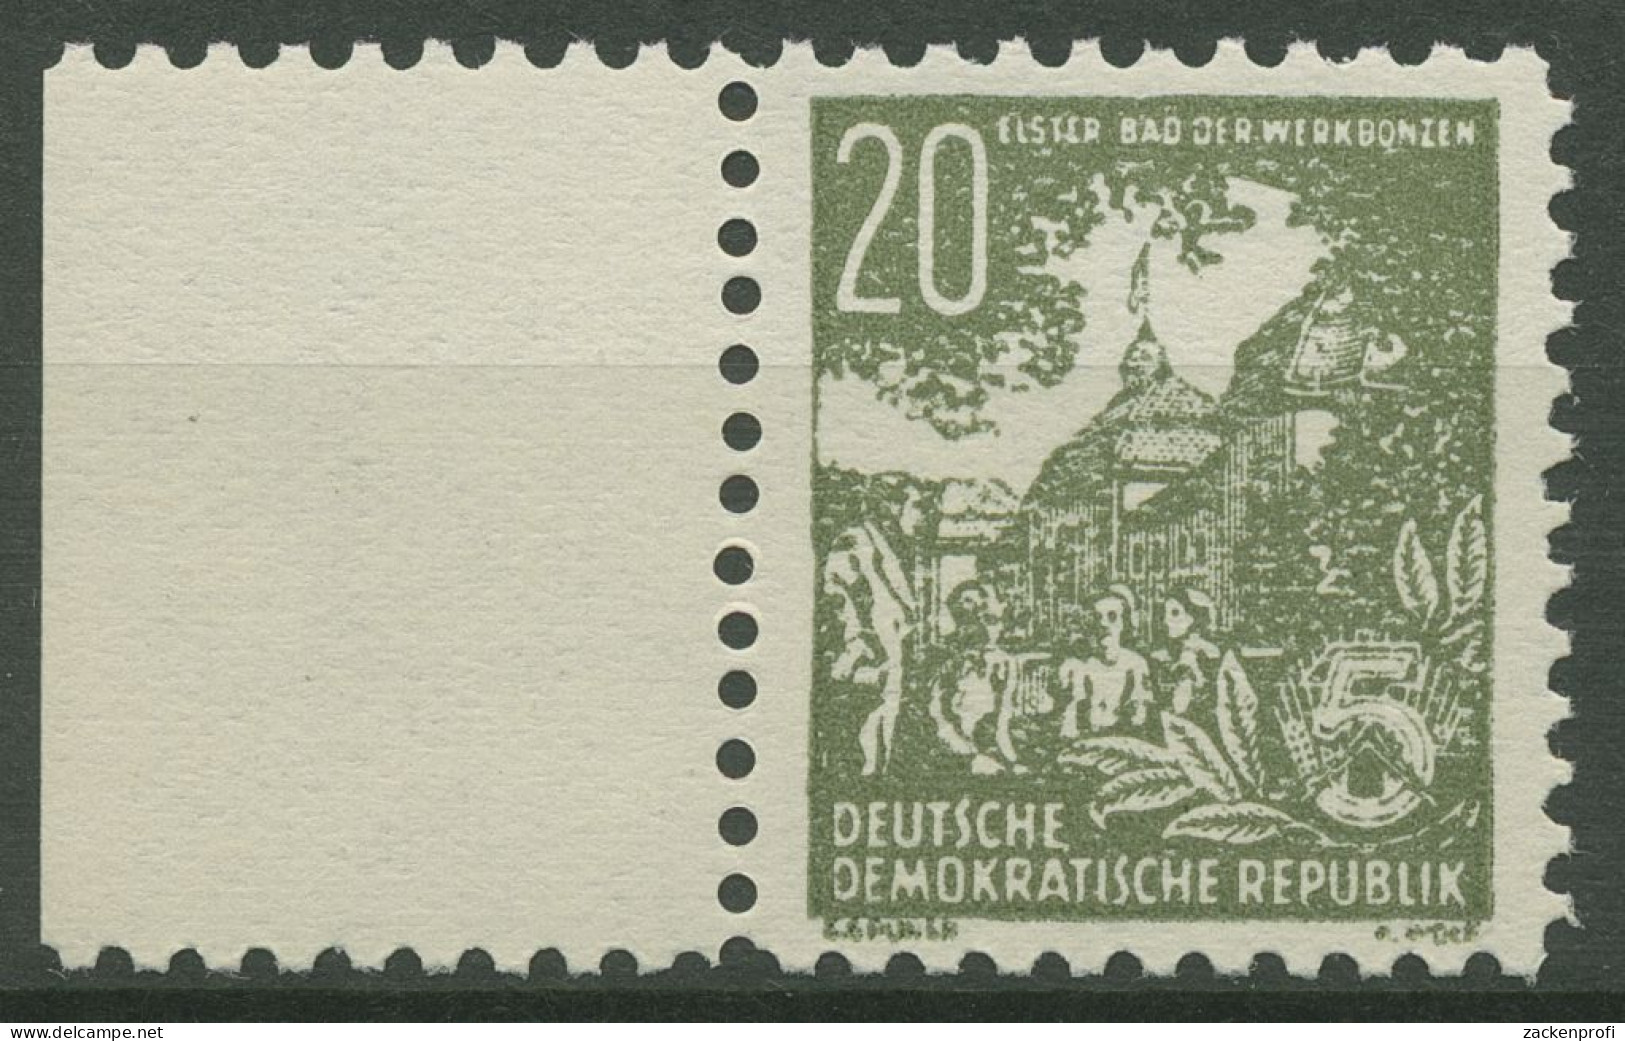 DDR 1953 Propagandafälschung Elster - Bad Der Werkbonzen P 10 Postfrisch - Neufs